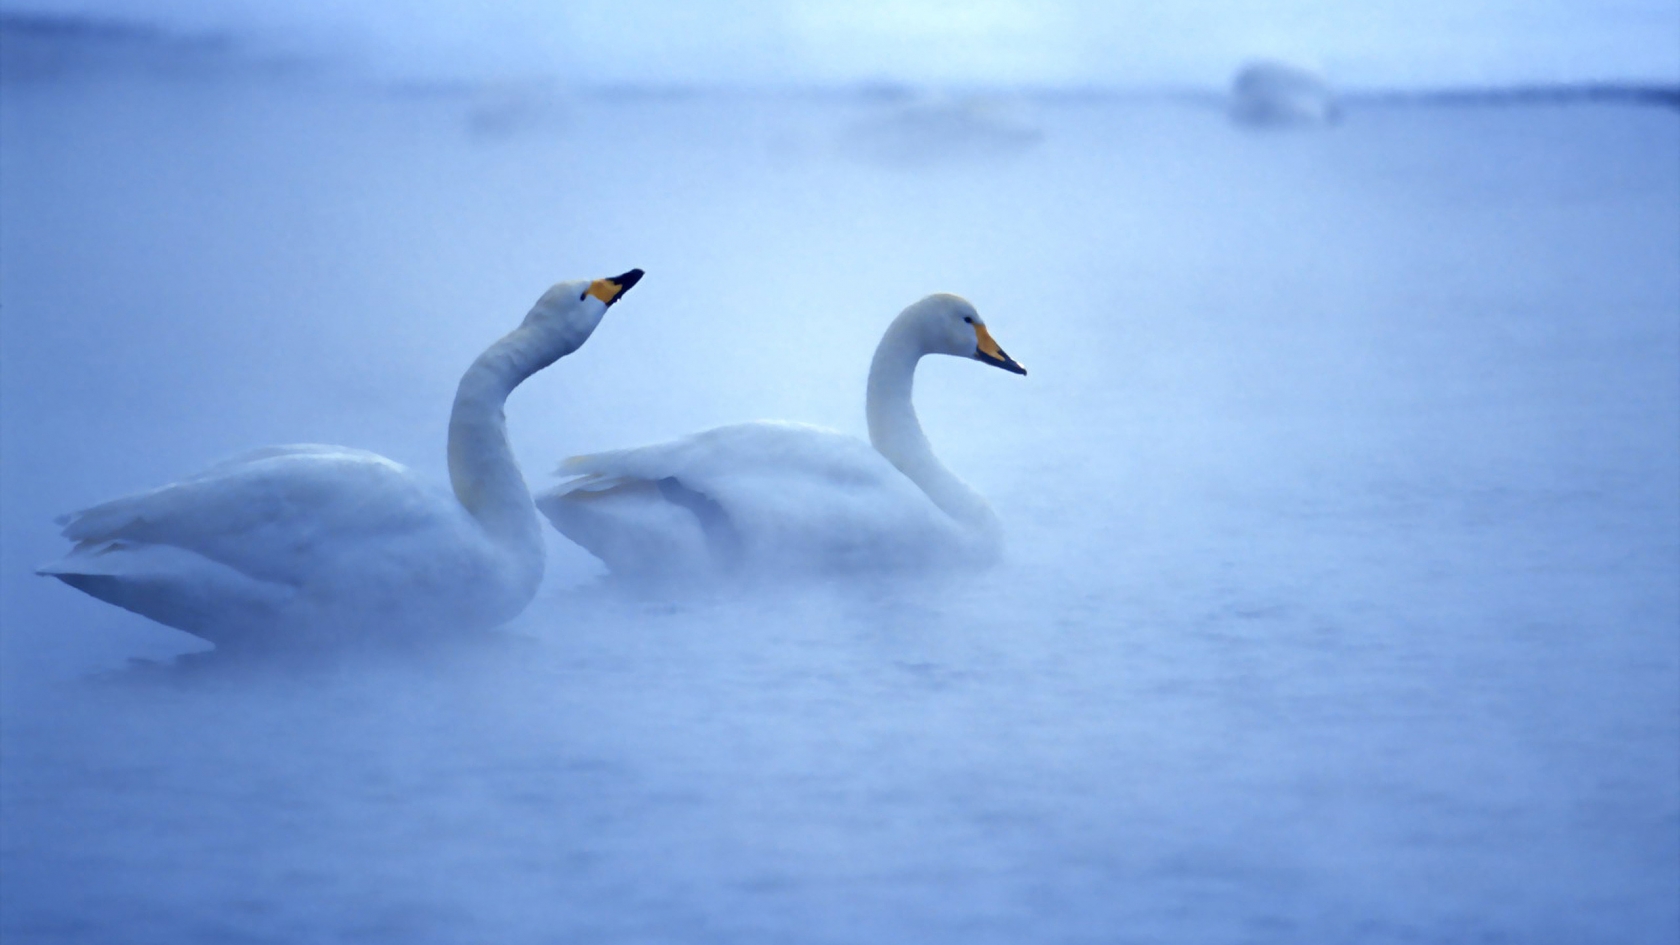 Lovely Swans for 1680 x 945 HDTV resolution